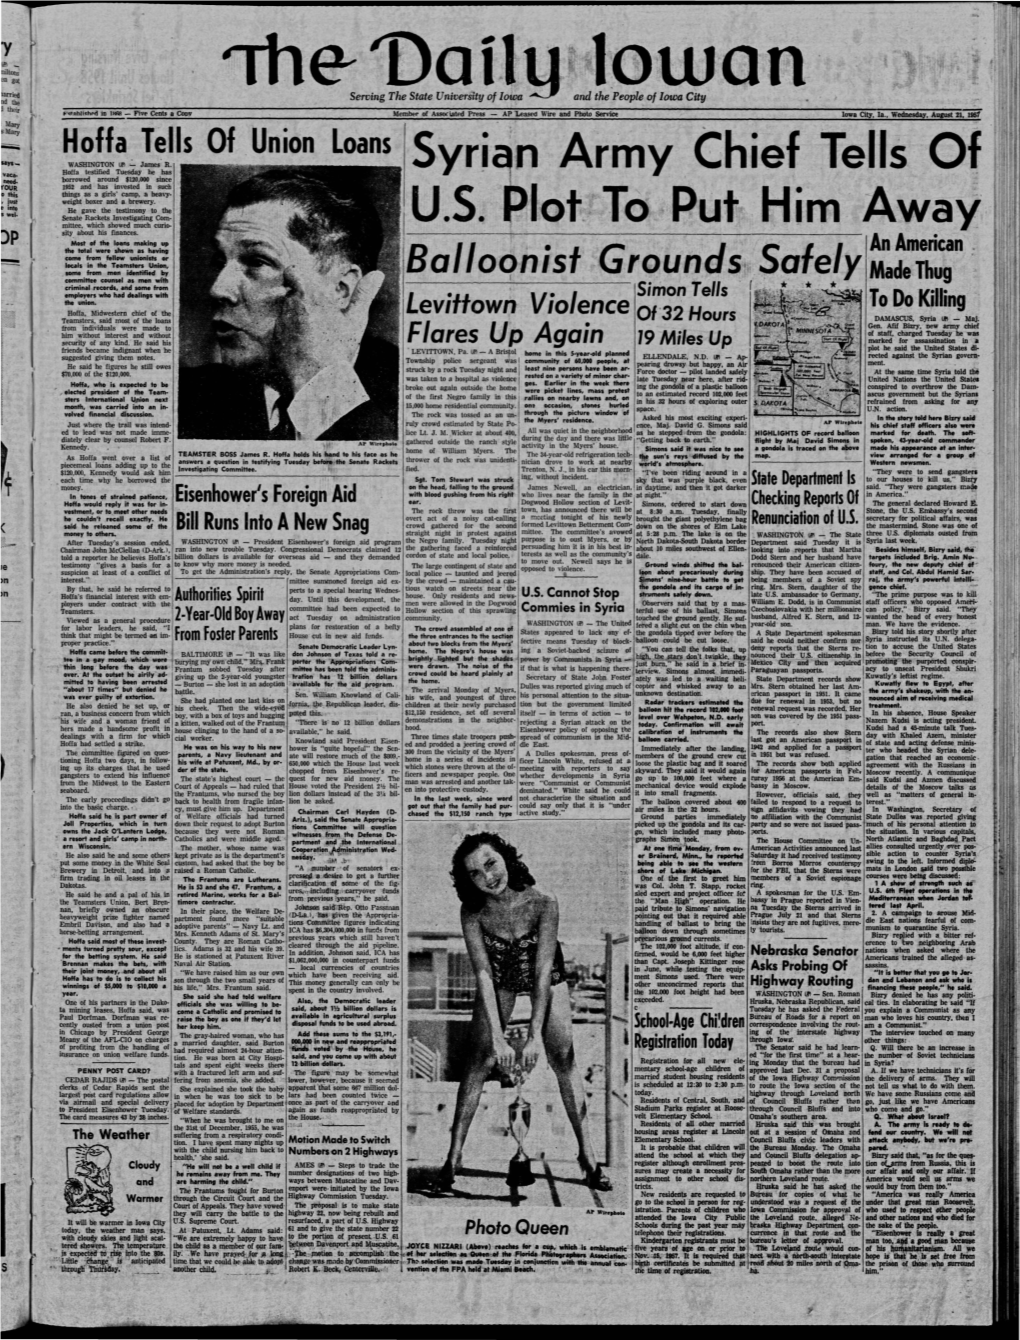 Daily Iowan (Iowa City, Iowa), 1957-08-21